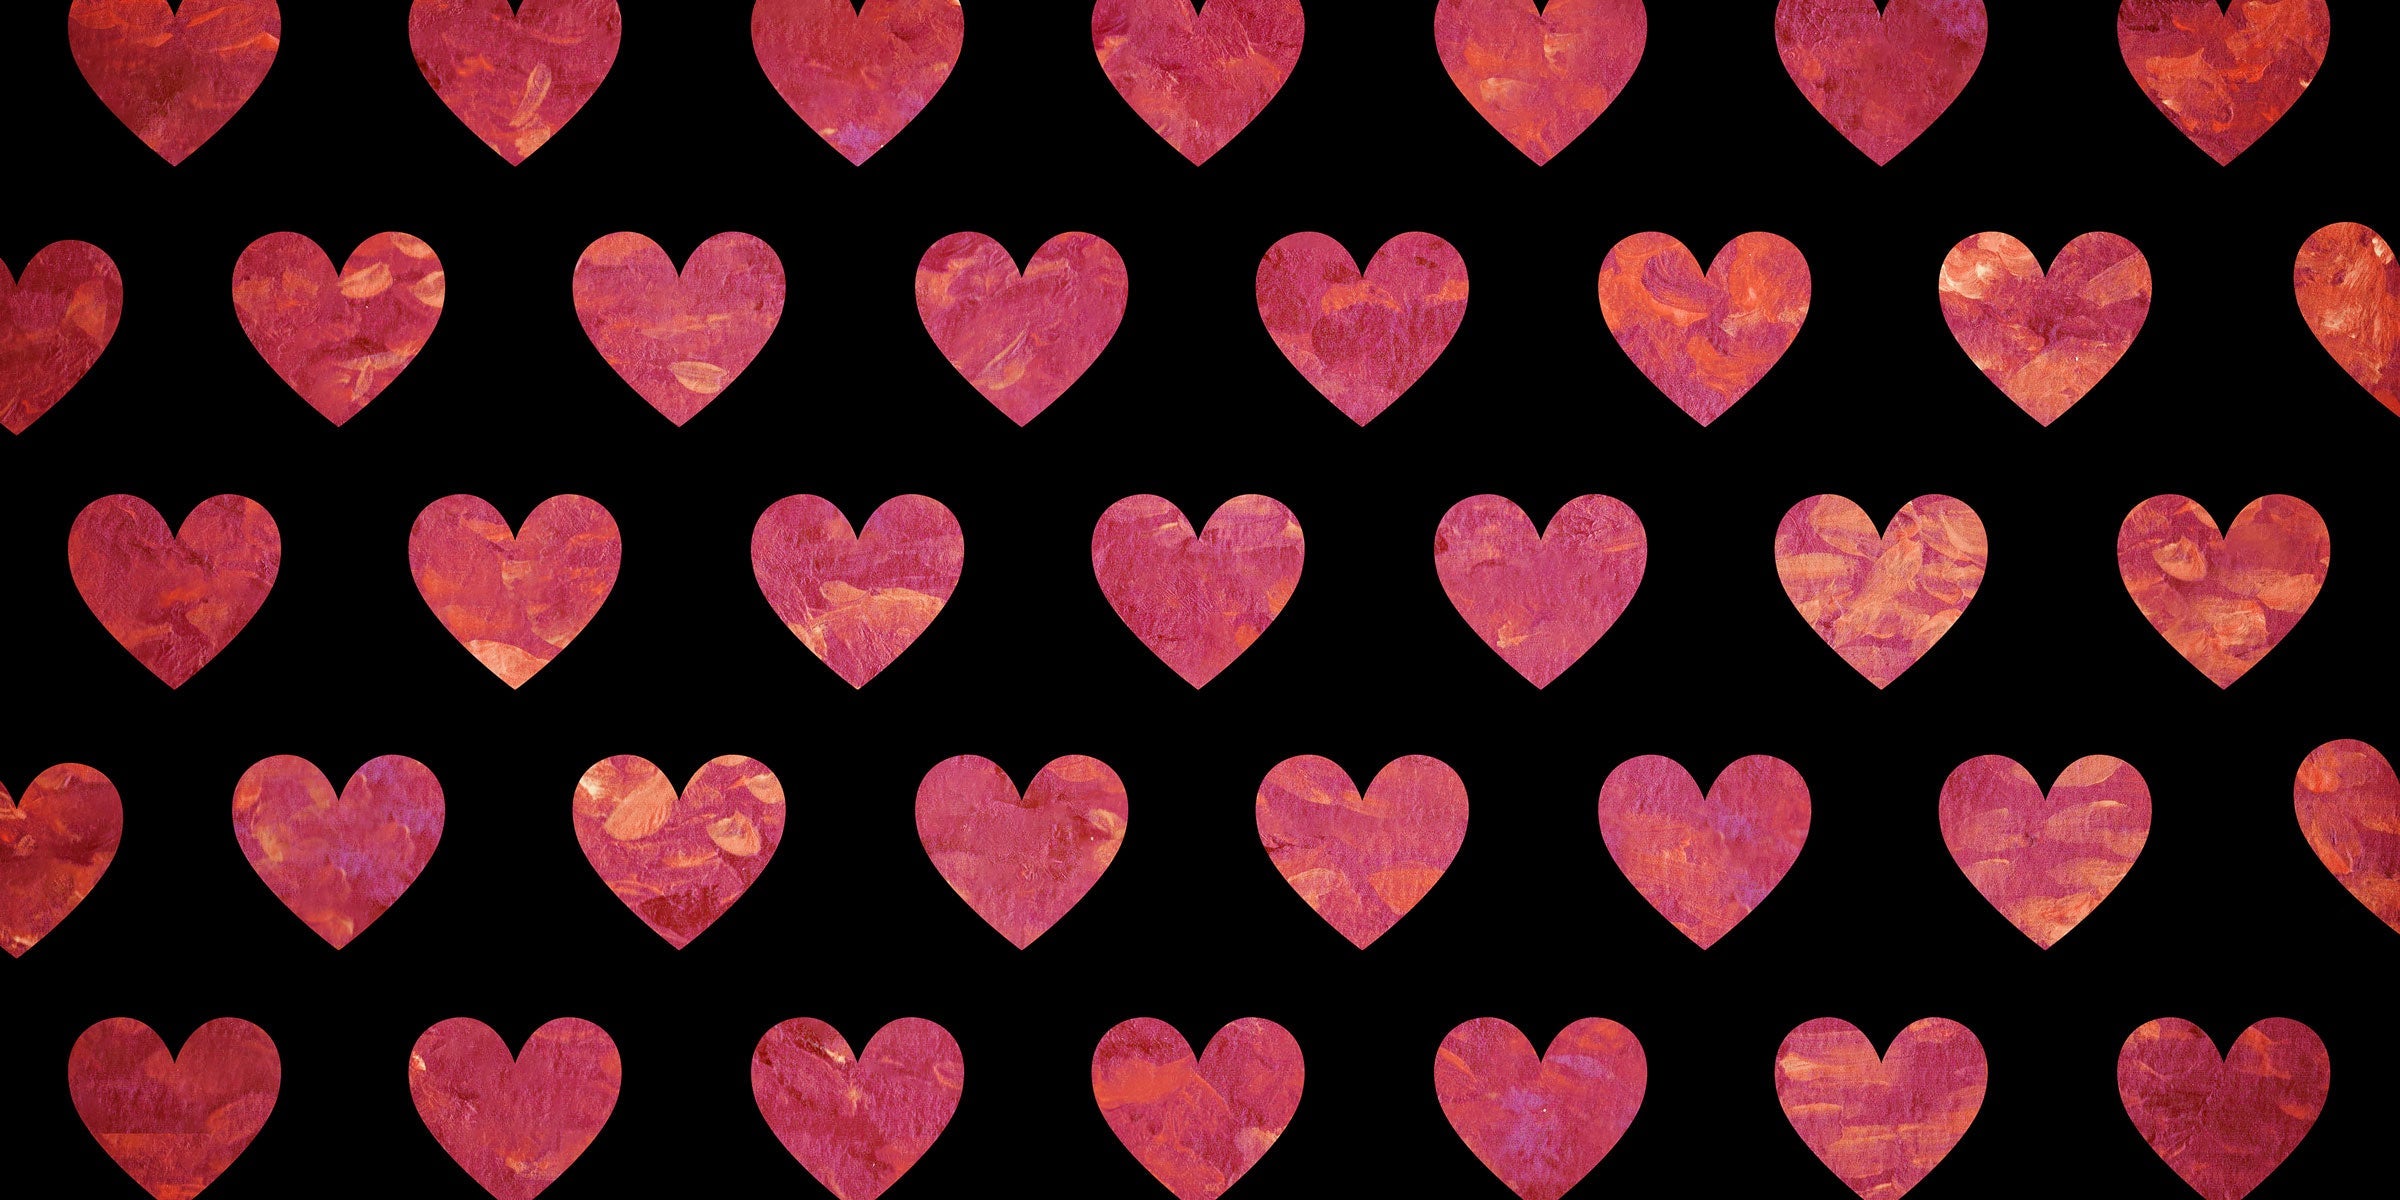 Kate gemaltes Herzmuster  Liebe  hintergrund für Fotografie Entworfen durch Mandy Ringe Photography